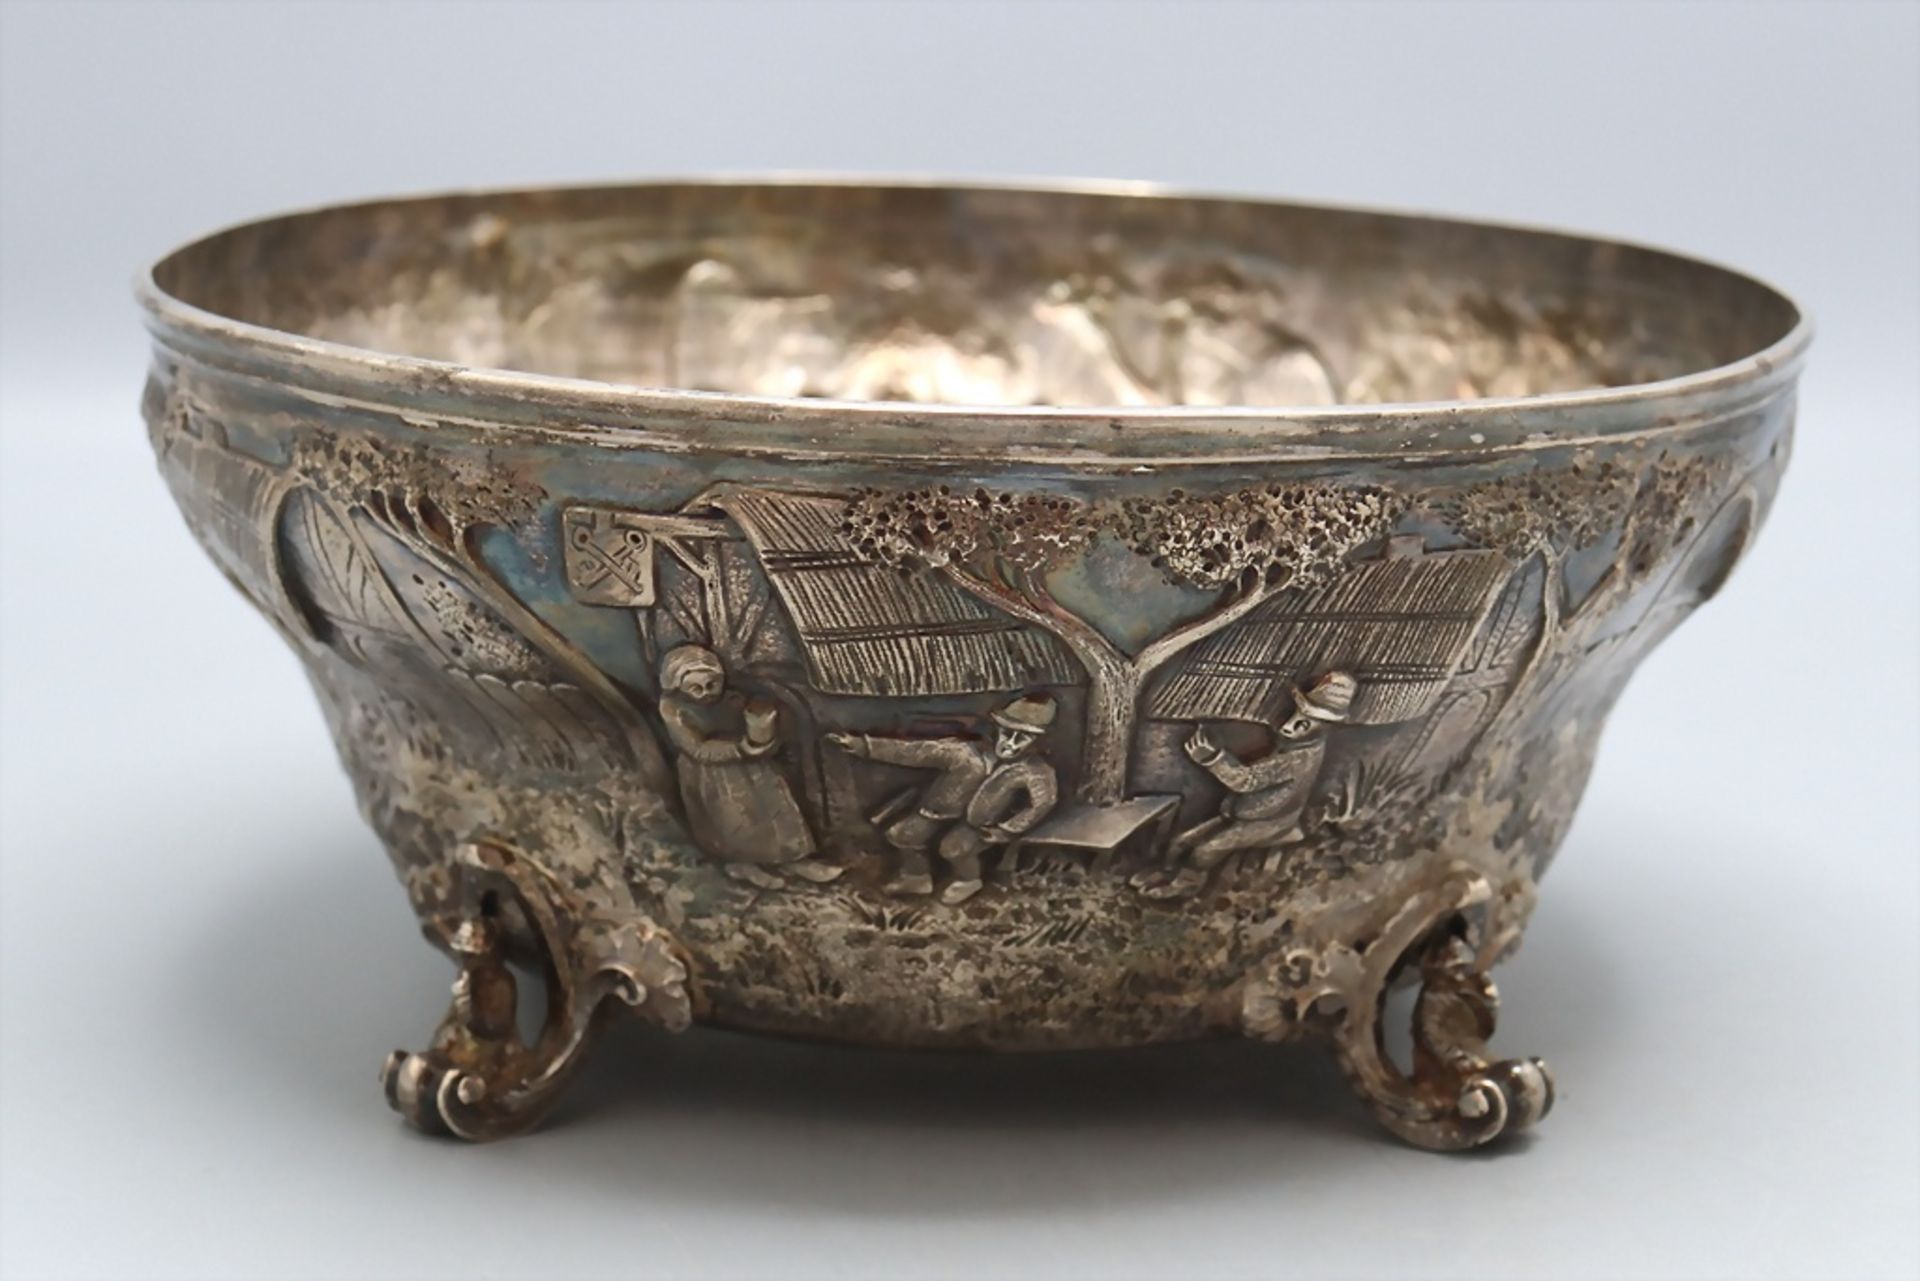 Silberschale / A silver bowl, Hessenberg, 19. Jh.